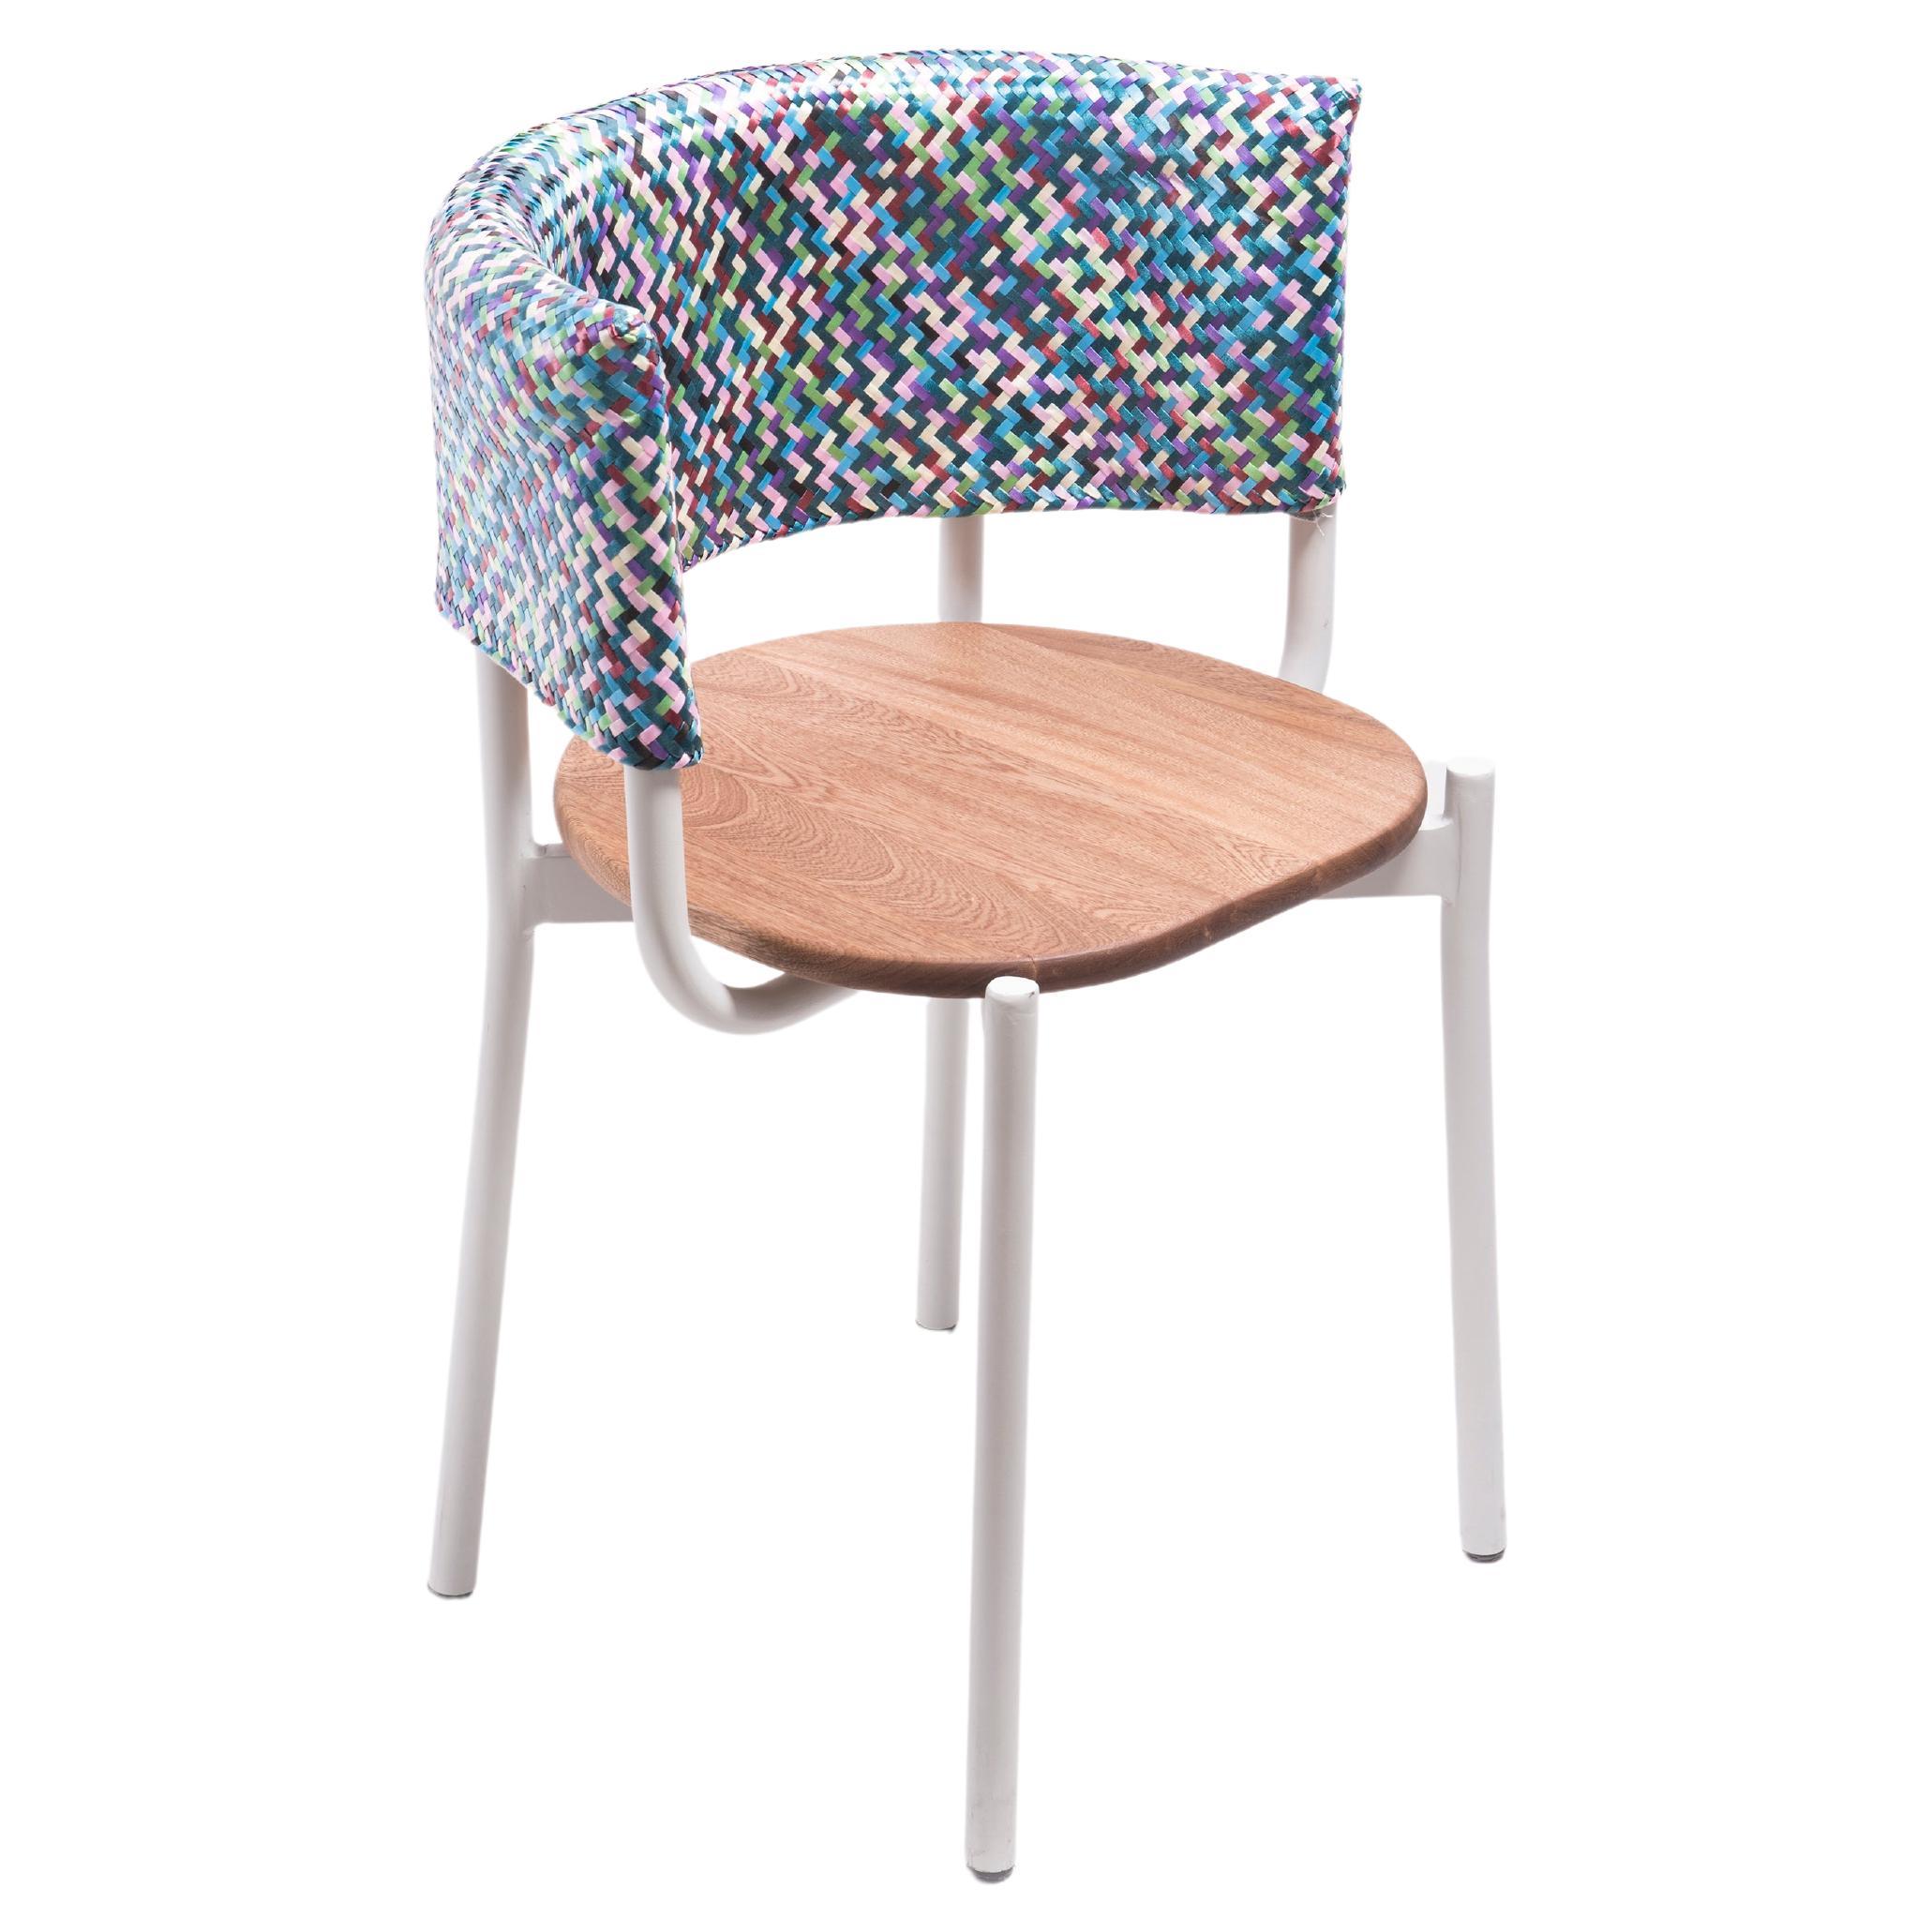 Weißer Outdoor-Stuhl mit handgefertigter geflochtener Rückenlehne aus Kunststofffaser